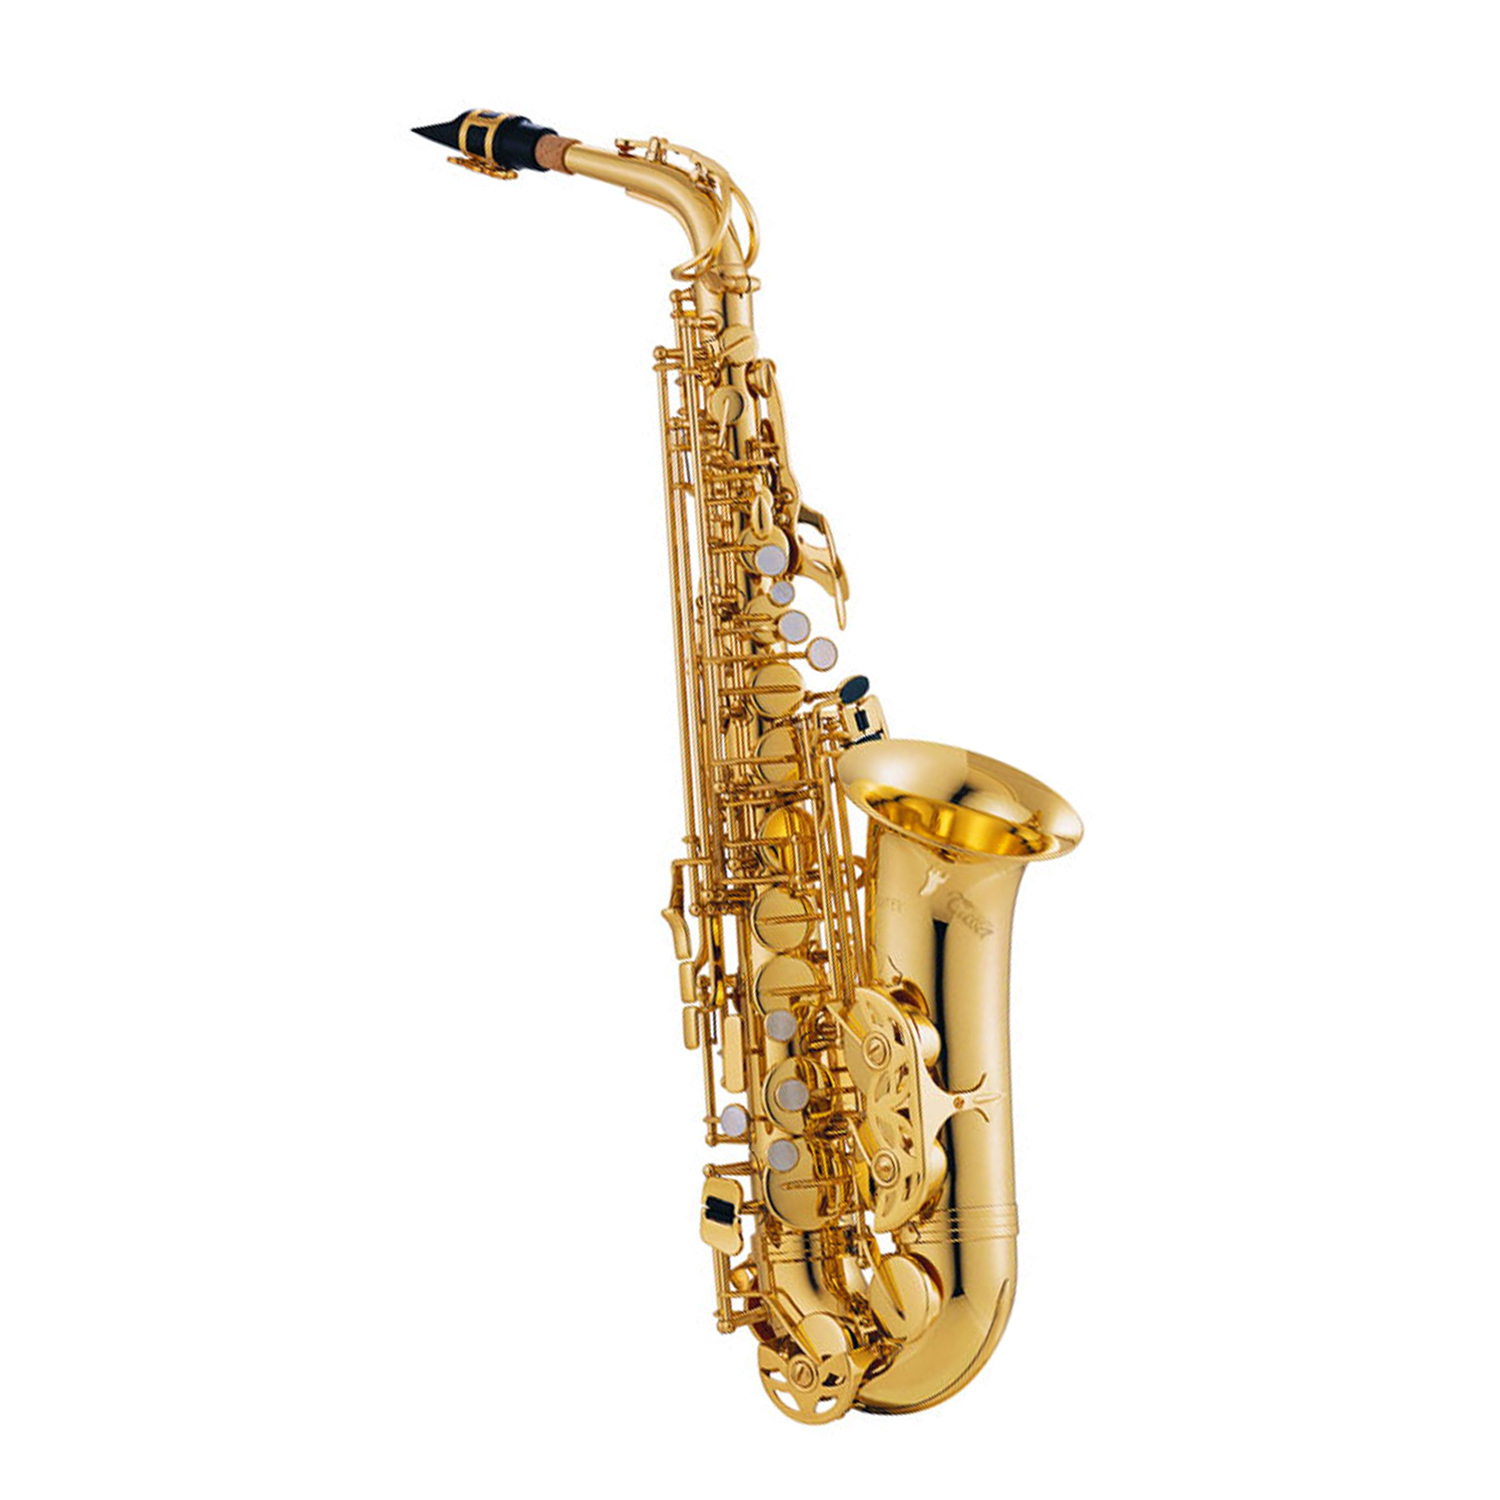 Alto saxophone. Саксофон. Саксофон инструмент. Маленький саксофон название. Музыкальный инструмент саксофон на подставке.